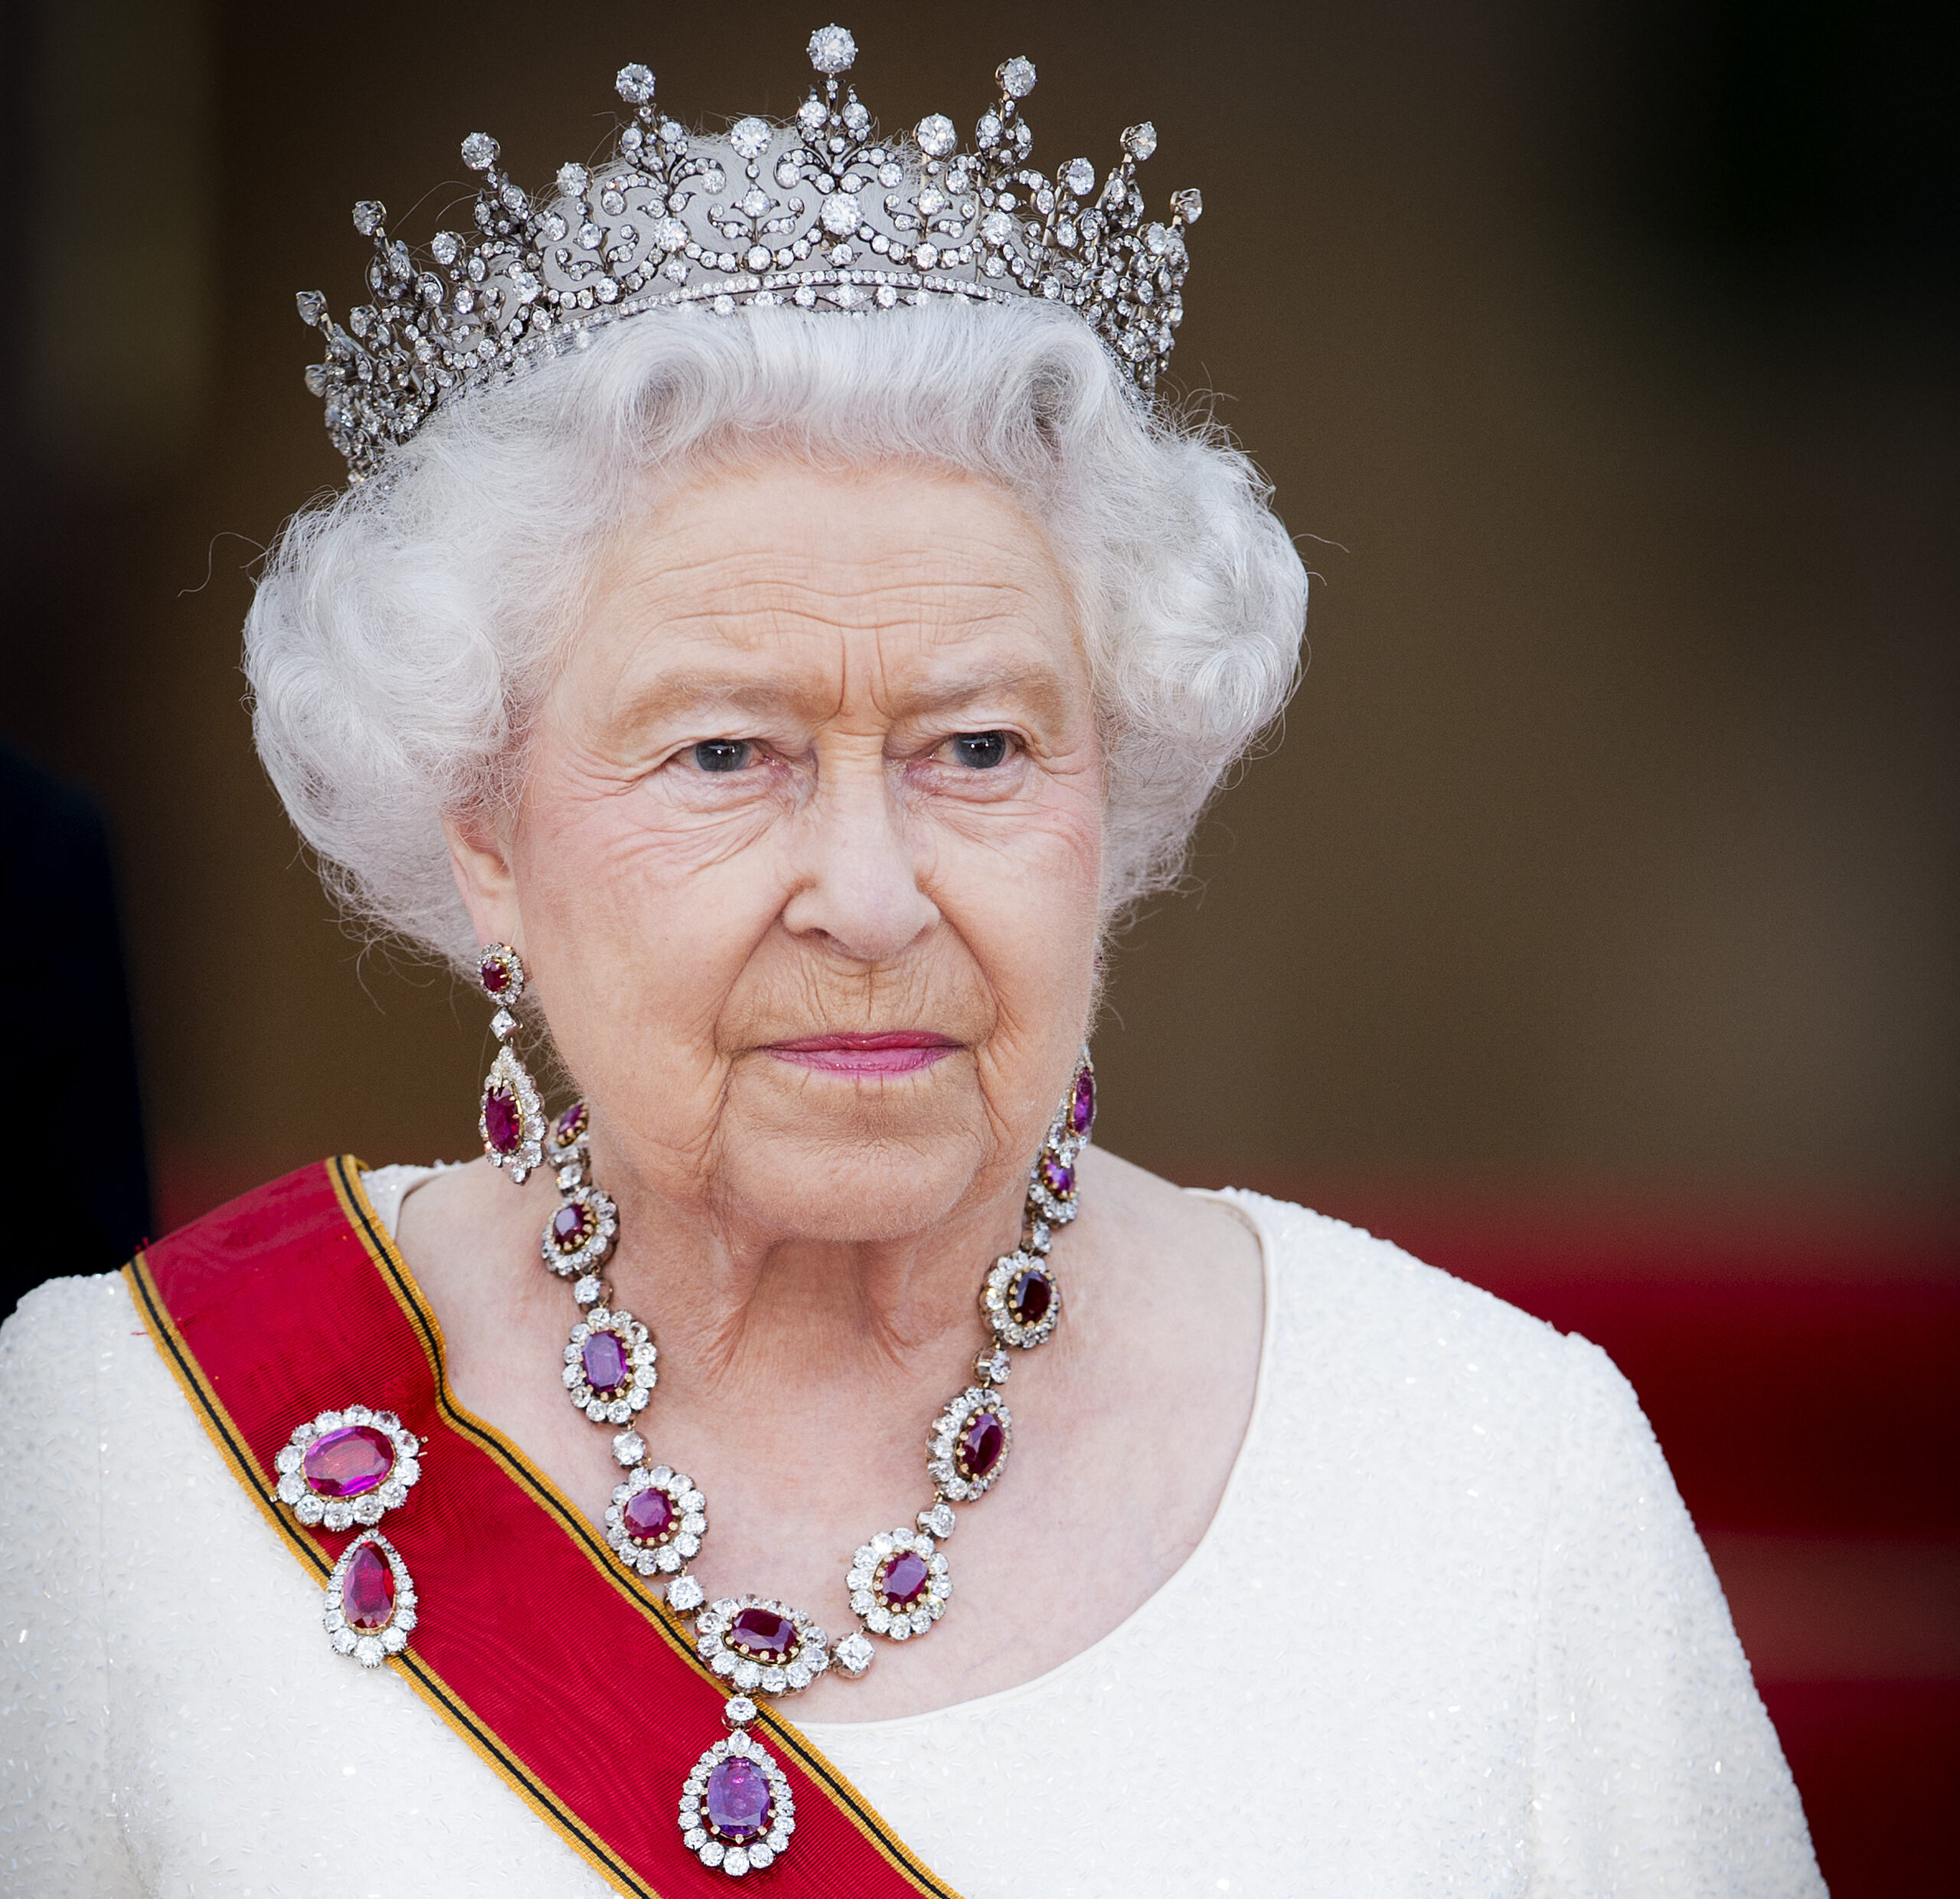 Βασίλισσα Ελισάβετ: Πέρασε στην Ιστορία στα 96 της χρόνια – «Η Αυτού Μεγαλειότης πέθανε ήσυχα σήμερα το απόγευμα» η ανακοίνωση του BBC